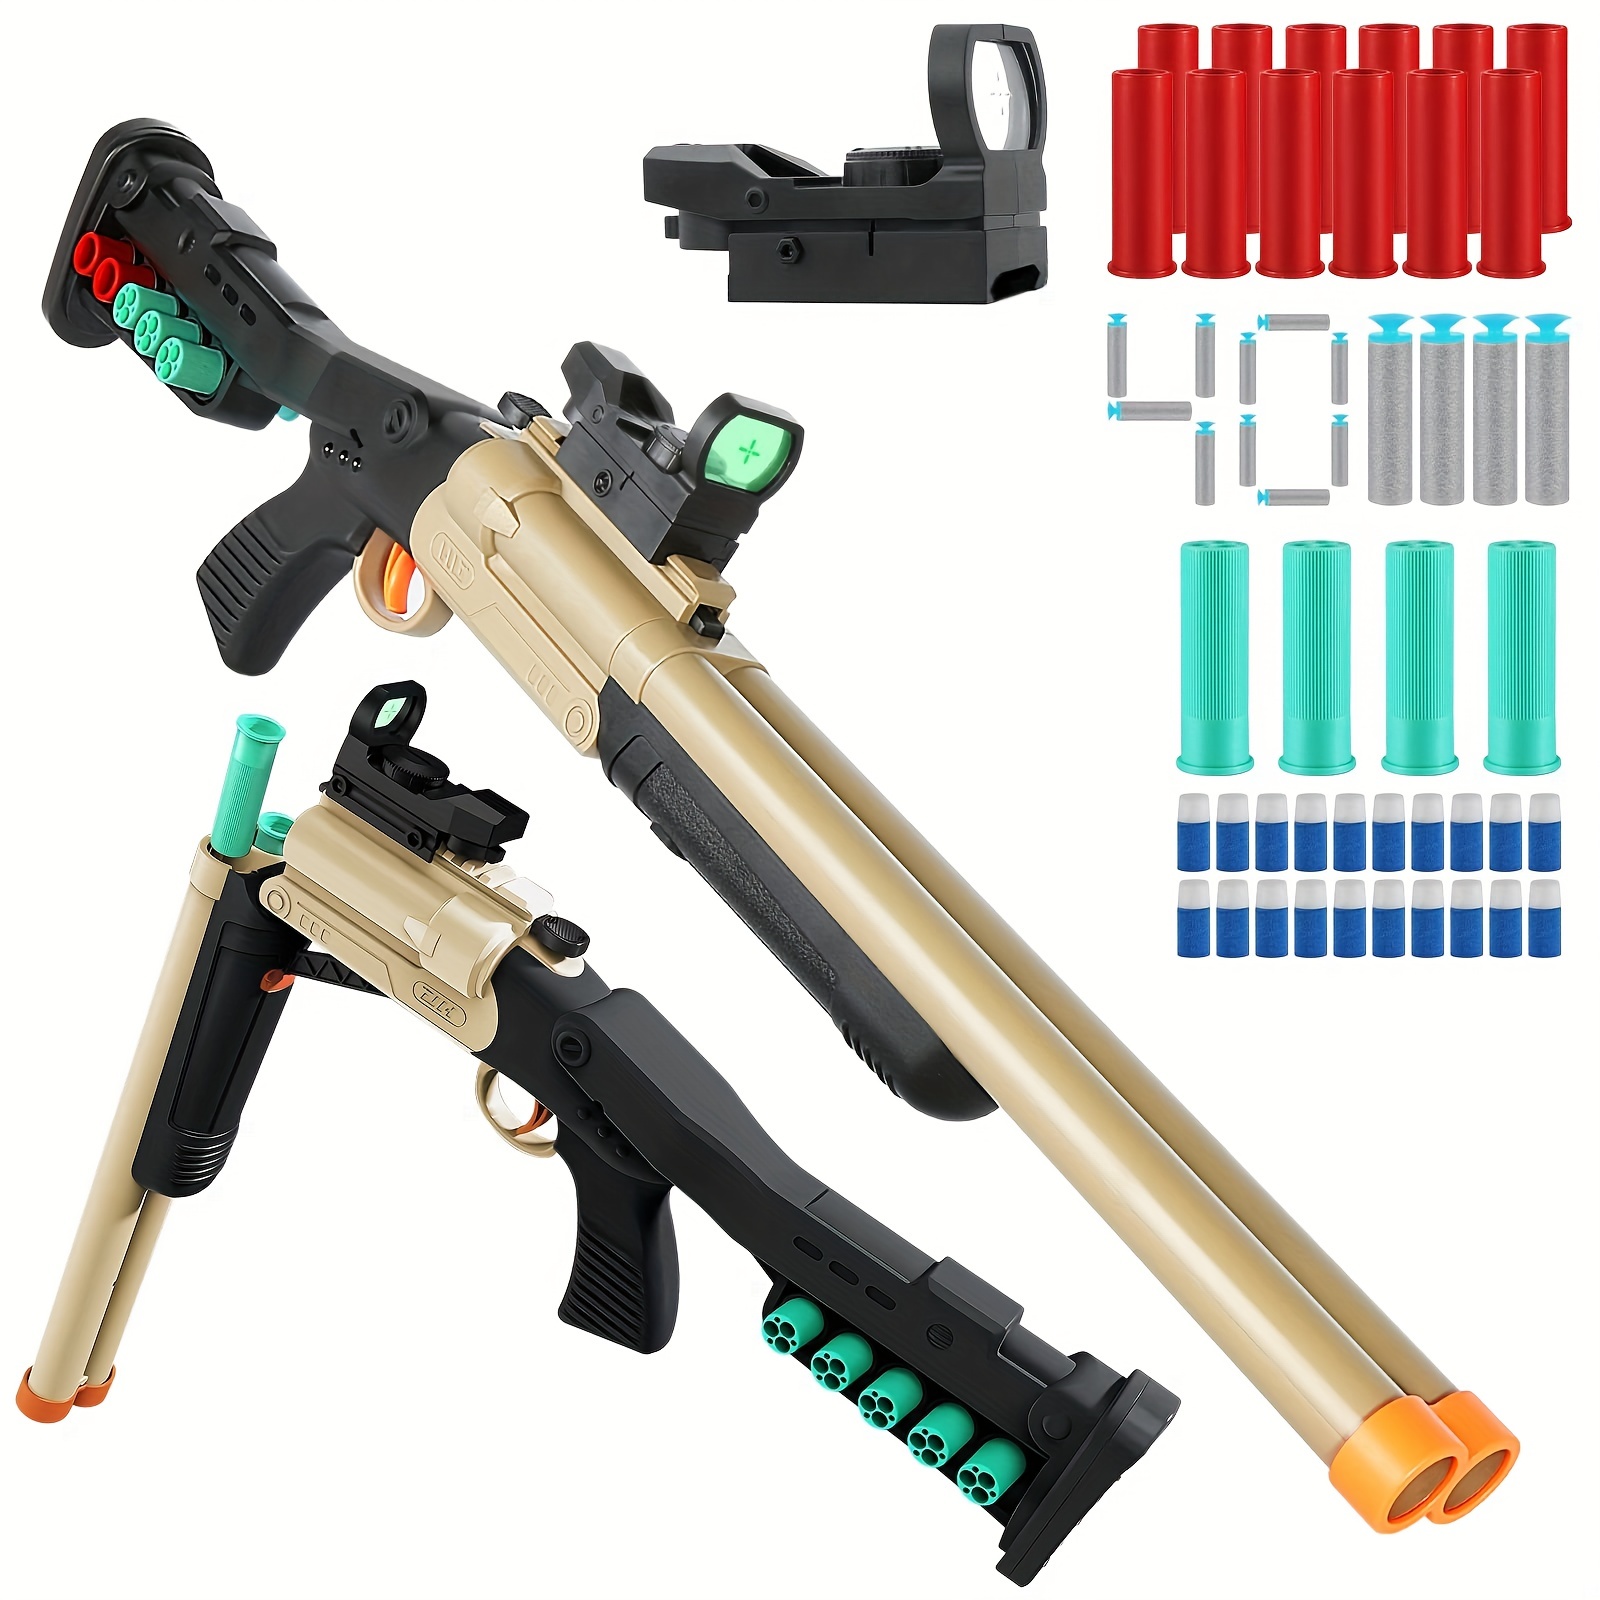  Pistolas de juguete para niños de 8 a 12 años, pistola de  juguete automática eléctrica de juguete con 200 balas, 2 revistas, 1 gafas,  juguetes de pistola de dardos de espuma